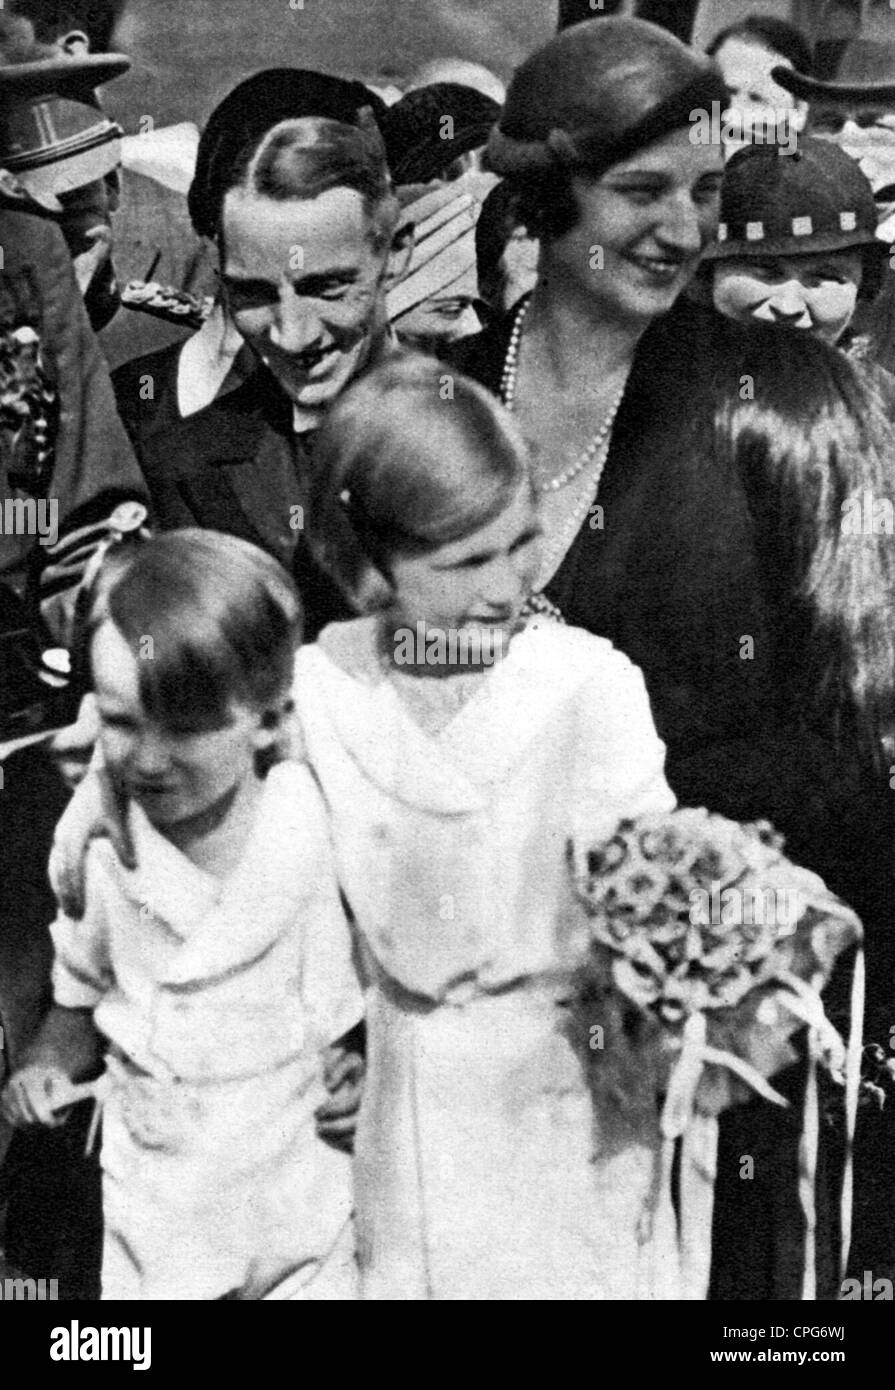 Astrid, 17.11.1905 - 29.8.1935, Reina Consort de los belgas 17.2.1934 - 29.8.1935, con los niños la princesa Josephine Charlotte y el príncipe heredero Baudouin, 'Die Woche', 4.9.1935, Foto de stock